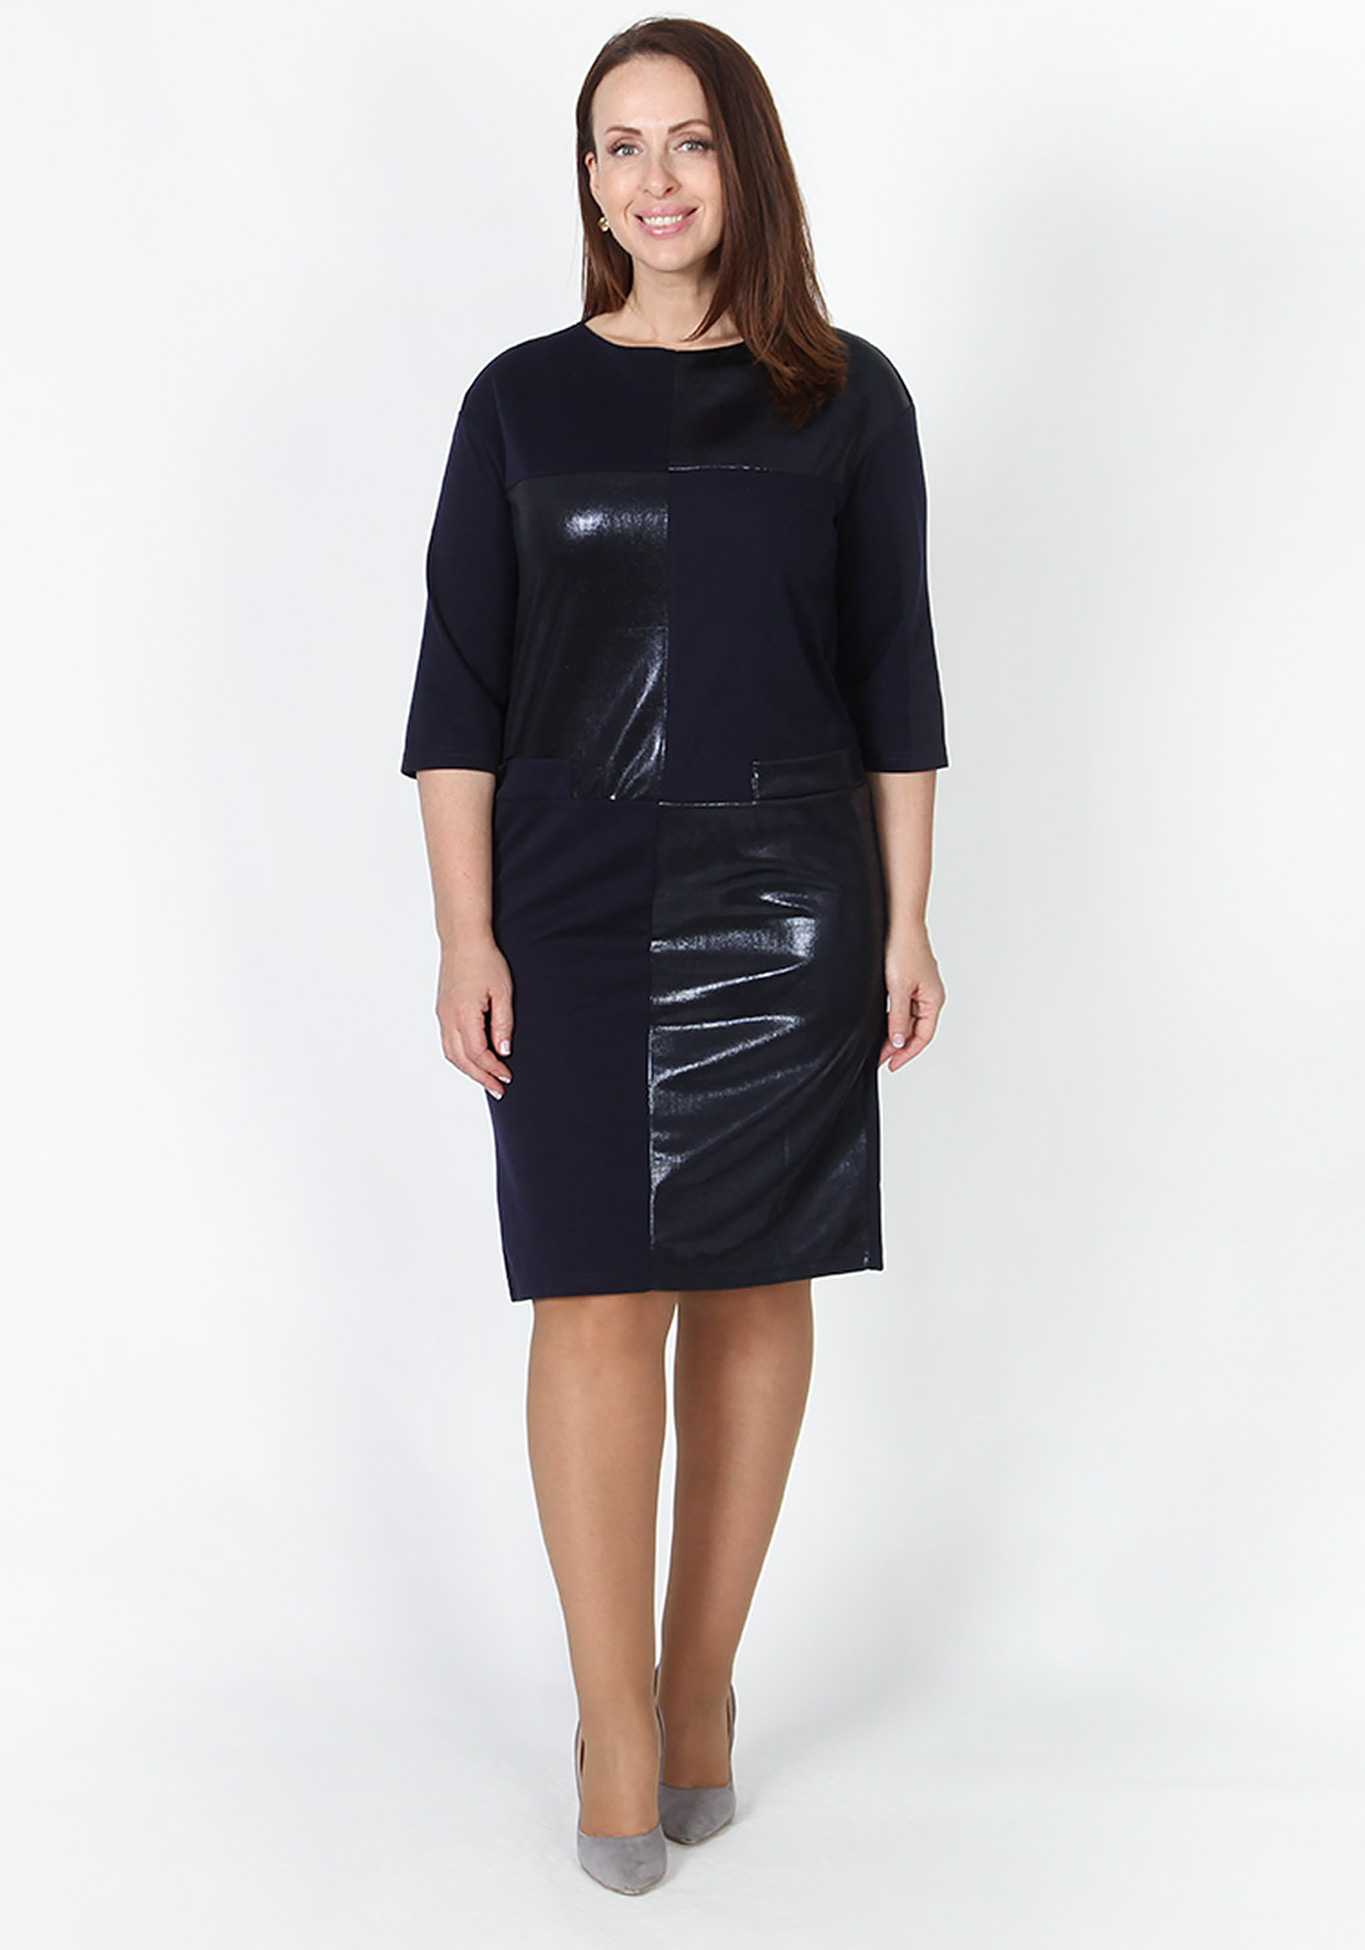 Платье «Триана» Veas, размер 48, цвет черный прямая модель - фото 1